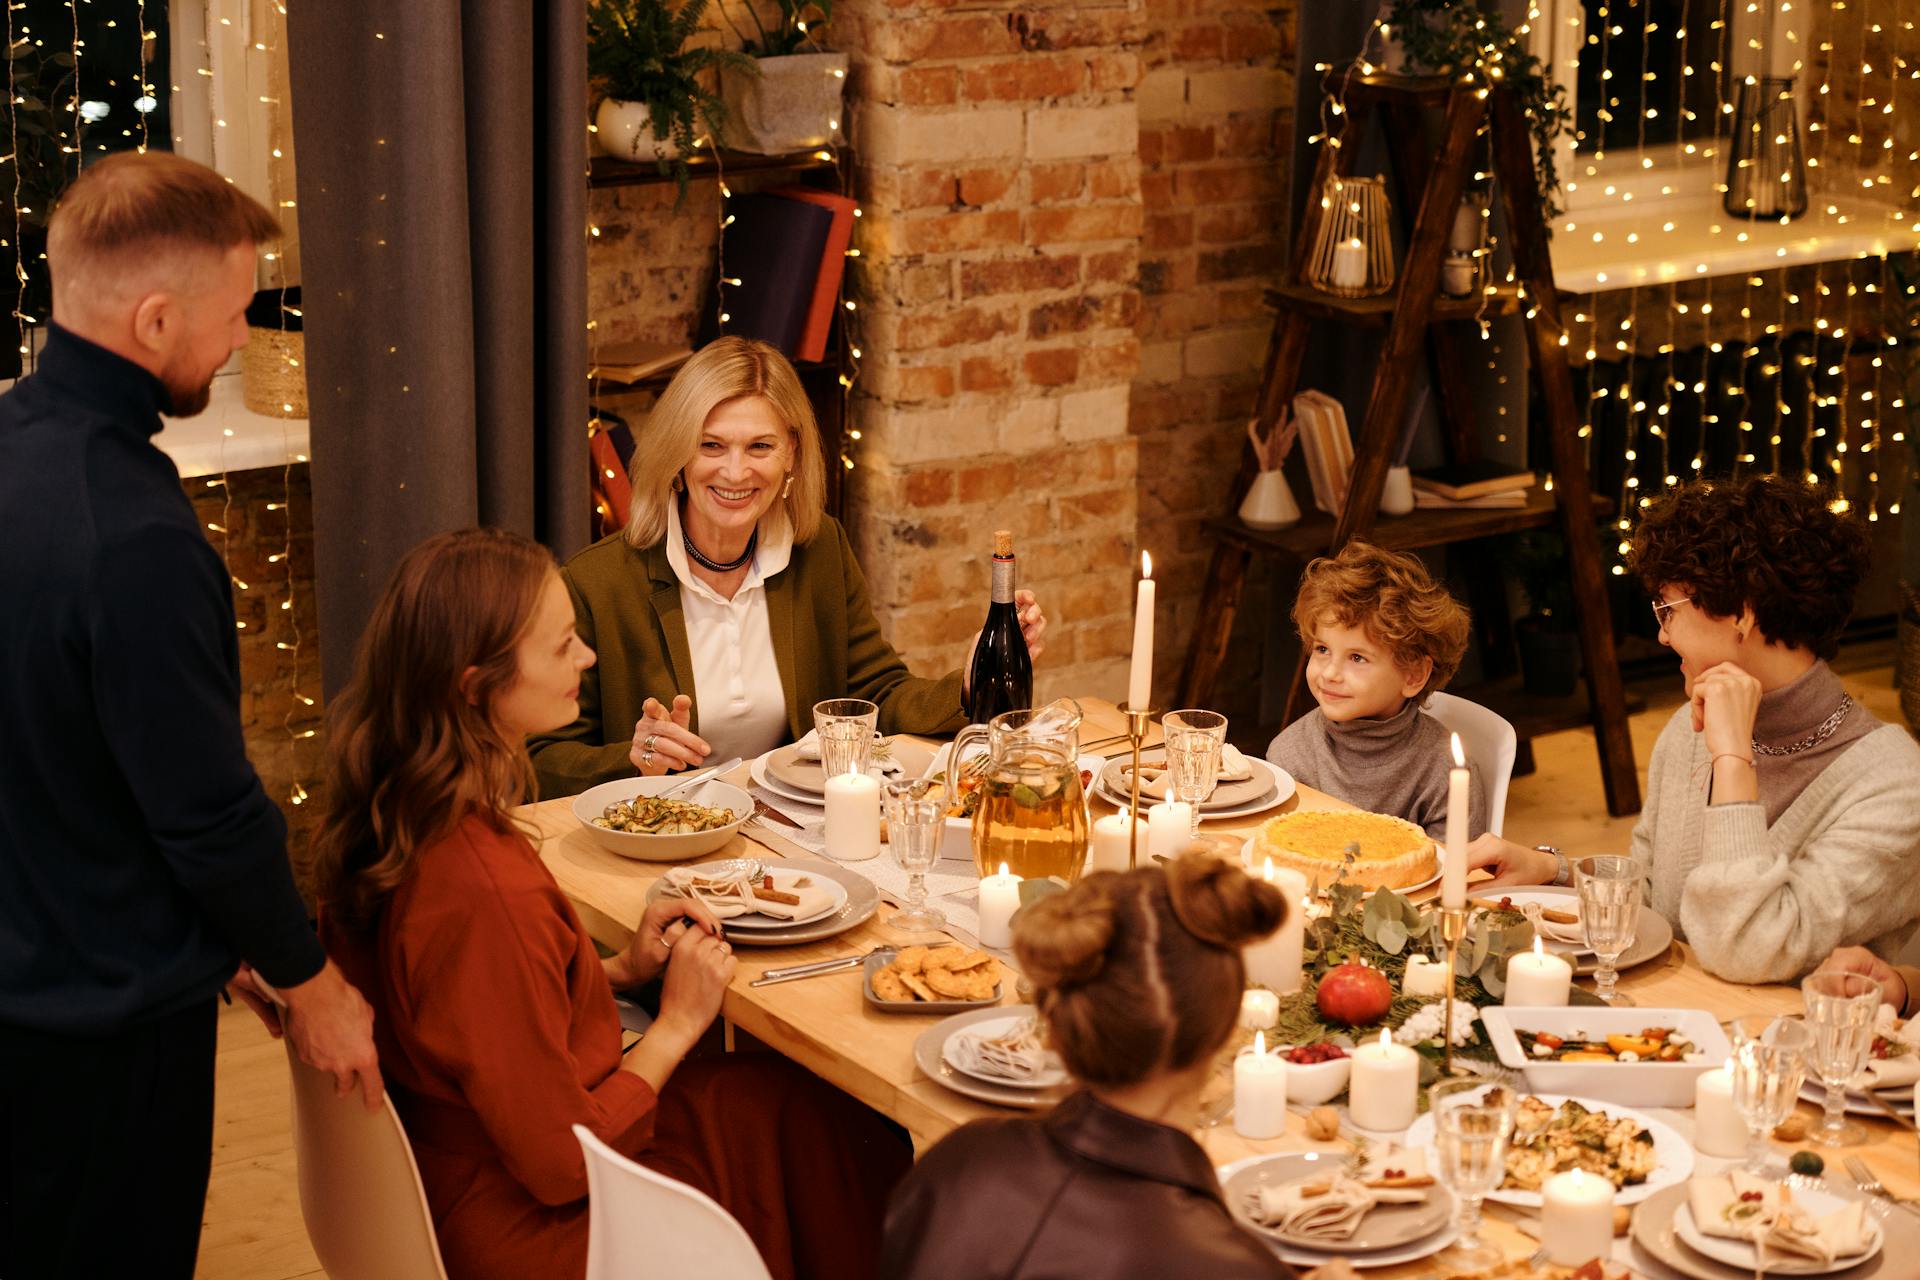 A family having dinner | Source: Pexels